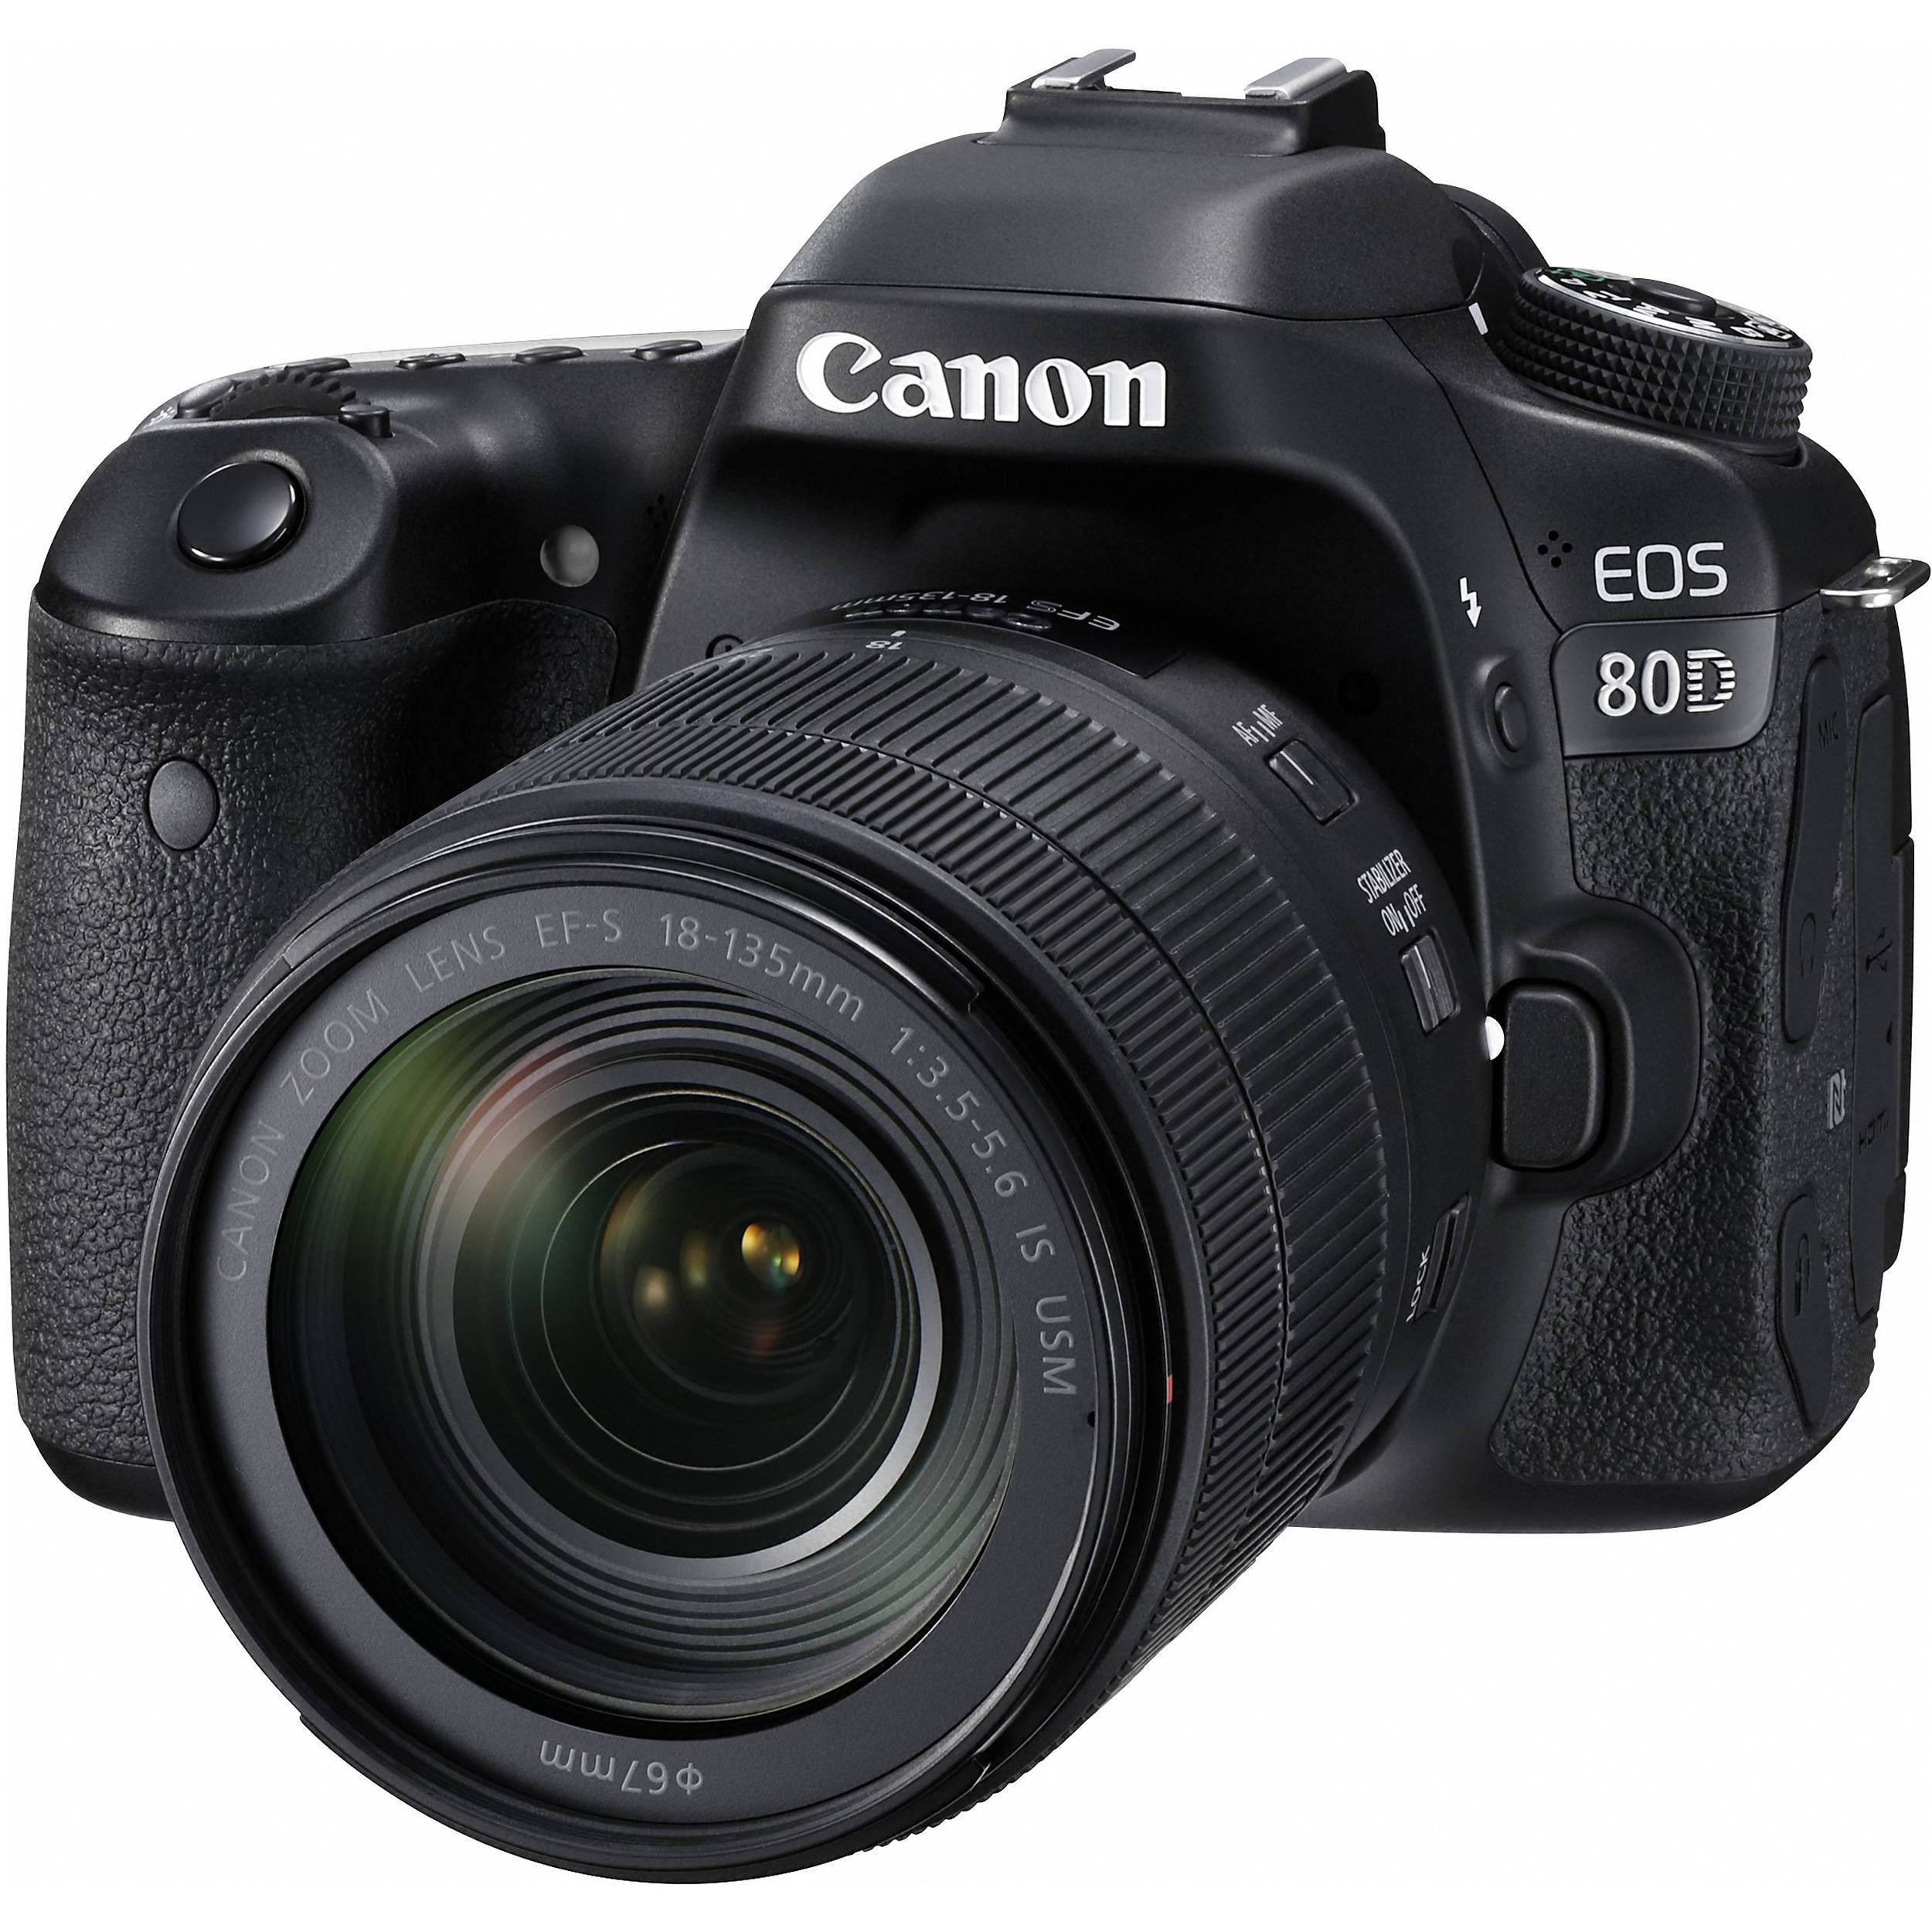 Máy ảnh Canon EOS 80D: Canon EOS 80D là một trong những chiếc máy ảnh tuyệt vời với khả năng chụp ảnh chuyên nghiệp và quay video chất lượng cao. Nó có nhiều tính năng ấn tượng và dễ sử dụng, cũng như các tùy chọn tùy chỉnh linh hoạt giúp bạn tạo ra những bức ảnh tuyệt đẹp nhất.